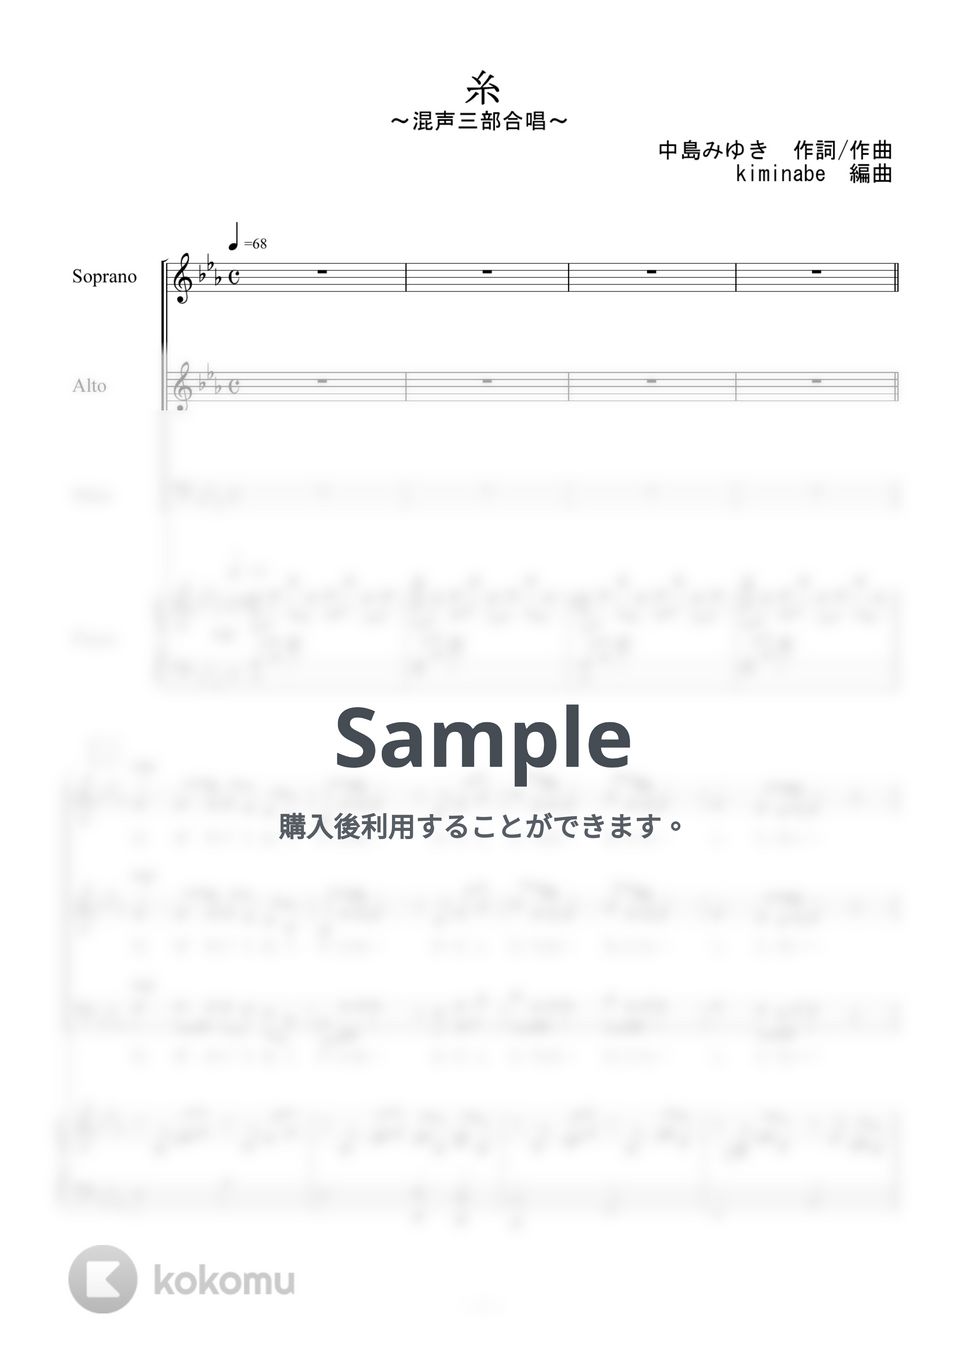 中島みゆき - 糸 (混声三部合唱) by kiminabe